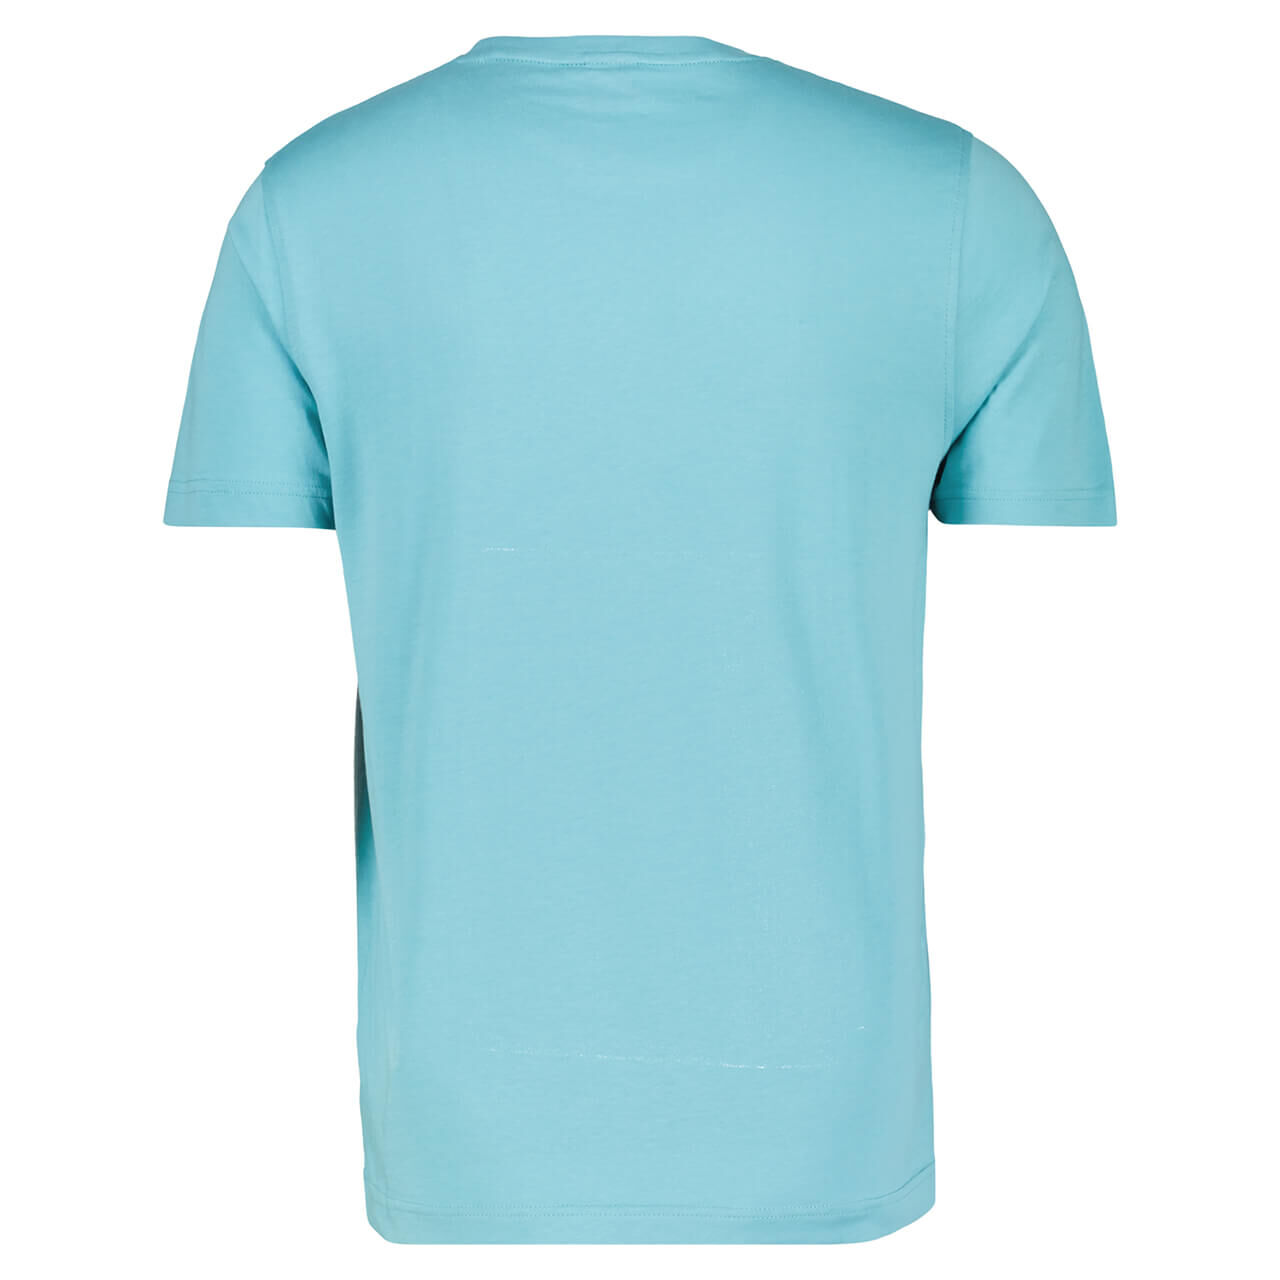 Lerros Herren T-Shirt light turquoise